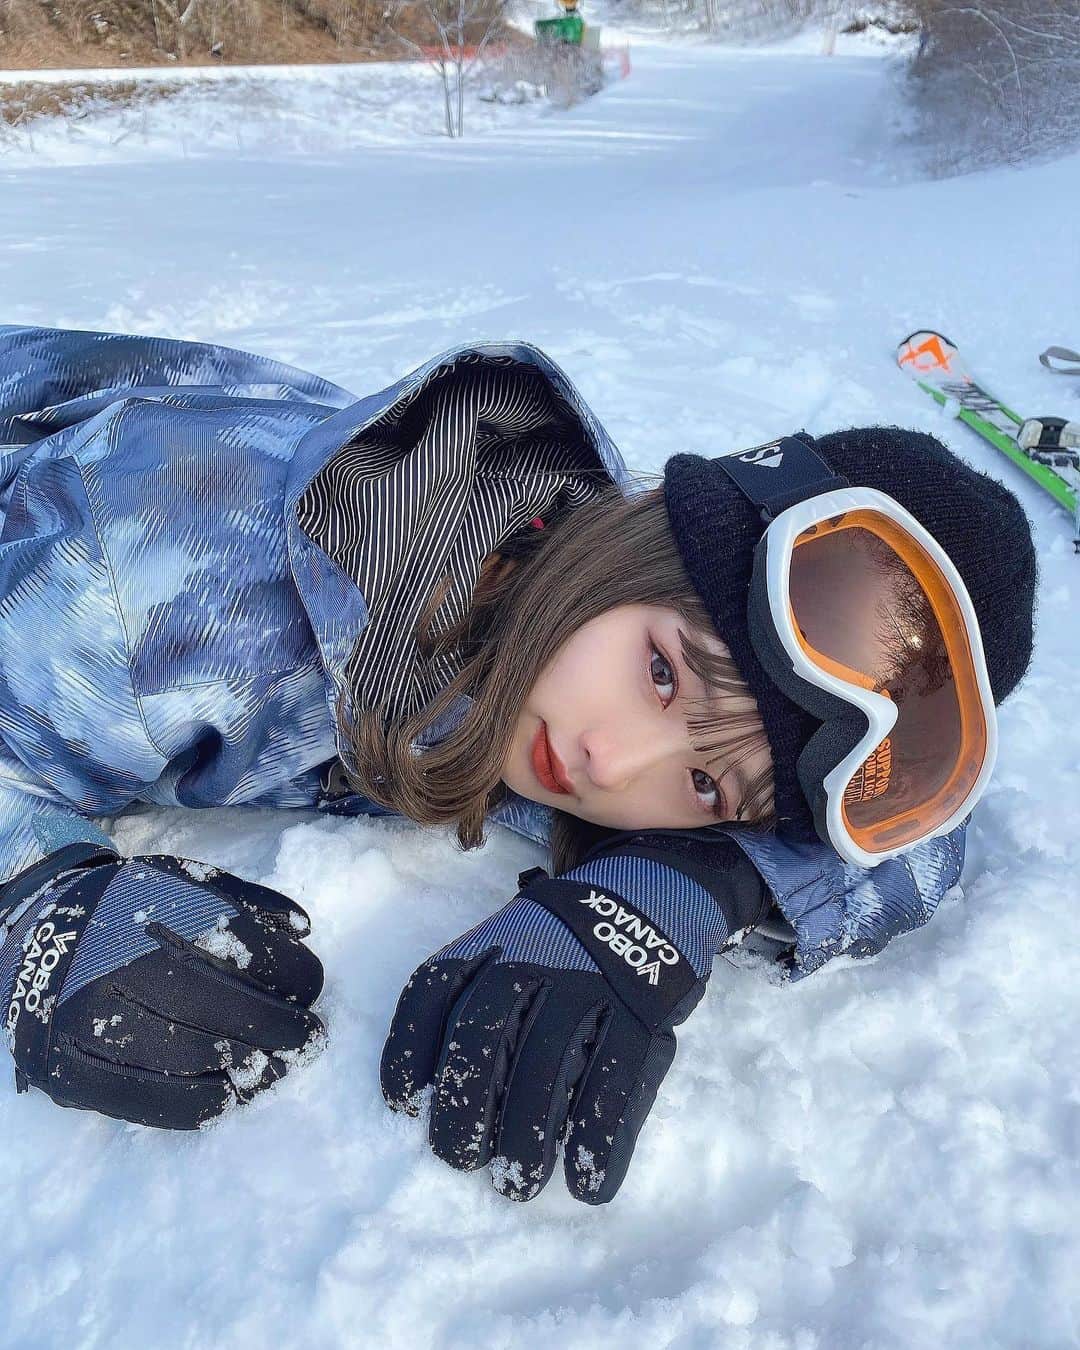 森下愛里沙(もりしたありさ) さんのインスタグラム写真 - (森下愛里沙(もりしたありさ) Instagram)「ㅤㅤㅤㅤㅤㅤㅤㅤㅤㅤㅤㅤㅤ ㅤㅤㅤㅤㅤㅤㅤㅤㅤㅤㅤㅤㅤ ㅤㅤㅤㅤㅤㅤㅤㅤㅤㅤㅤㅤㅤ ㅤㅤㅤㅤㅤㅤㅤㅤㅤㅤㅤㅤㅤ 今年初のスキーへ⛷ ㅤㅤㅤㅤㅤㅤㅤㅤㅤㅤㅤㅤㅤ ㅤㅤㅤㅤㅤㅤㅤㅤㅤㅤㅤㅤㅤ ㅤㅤㅤㅤㅤㅤㅤㅤㅤㅤㅤㅤㅤ スキーは小学生の頃から授業とかでも やっていたので(長野出身の人はわかるかな?) 久しぶりだったけど滑れました🙆🏻‍♀️❤️ ㅤㅤㅤㅤㅤㅤㅤㅤㅤㅤㅤㅤㅤ ㅤㅤㅤㅤㅤㅤㅤㅤㅤㅤㅤㅤㅤ ㅤㅤㅤㅤㅤㅤㅤㅤㅤㅤㅤㅤㅤ 実はスキーをやる前にスノボ☃️に初挑戦 したんだけど開始10分で諦めました🤦🏻‍♀️笑 ㅤㅤㅤㅤㅤㅤㅤㅤㅤㅤㅤㅤㅤ 左足前らしいけど私は右前がやりやすいな って思ってやってみたけど無理でした😂 ㅤㅤㅤㅤㅤㅤㅤㅤㅤㅤㅤㅤㅤ ㅤㅤㅤㅤㅤㅤㅤㅤㅤㅤㅤㅤㅤ  ㅤㅤㅤㅤㅤㅤㅤㅤㅤㅤㅤㅤㅤㅤㅤㅤㅤㅤㅤㅤㅤㅤㅤㅤㅤㅤ 誰かスノボ教えてください😭👏🏻 スノボ女子になりたいです🙋🏻‍♀️ ㅤㅤㅤㅤㅤㅤㅤㅤㅤㅤㅤㅤㅤ ㅤㅤㅤㅤㅤㅤㅤㅤㅤㅤㅤㅤㅤ ㅤㅤㅤㅤㅤㅤㅤㅤㅤㅤㅤㅤㅤ ㅤㅤㅤㅤㅤㅤㅤㅤㅤㅤㅤㅤㅤ ㅤㅤㅤㅤㅤㅤㅤㅤㅤㅤㅤㅤㅤ #スキー #スキー場 #スノボ #スノボー #スノボー女子 #スノボ女子 #skiski #jrskiski #skiing #snowboarding #jrスキースキー #ぜんぶ雪のせいだ #全部雪のせいだ #この雪は消えない #軽井沢 #軽井沢旅行 #軽井沢スキー場 #軽井沢プリンスホテルスキー場 #ウィンタースポーツ #like4likes #l4l #instalike #instagood」1月20日 20時50分 - mini.ari